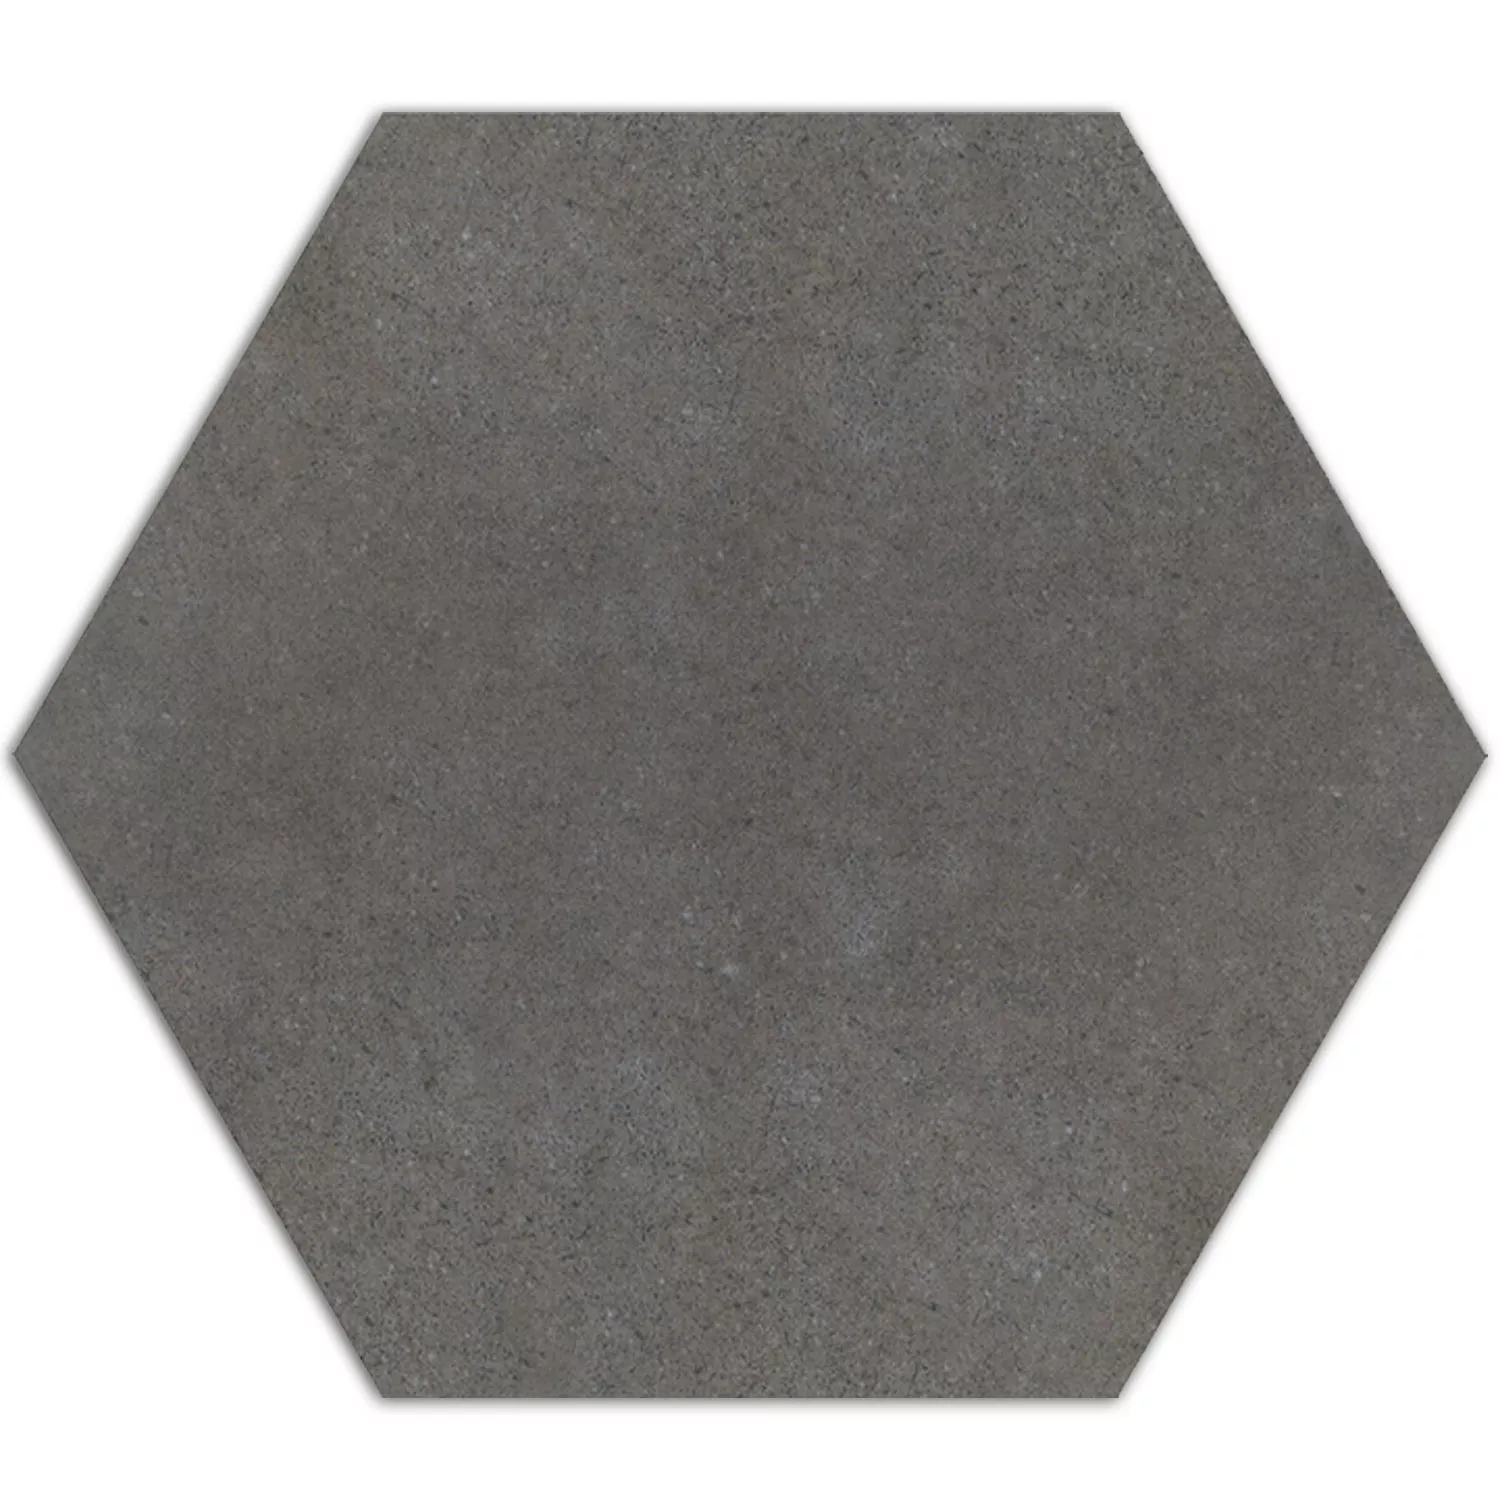 Cement Tiles Optic Hexagon Floor Tiles Alicante Dark Grey